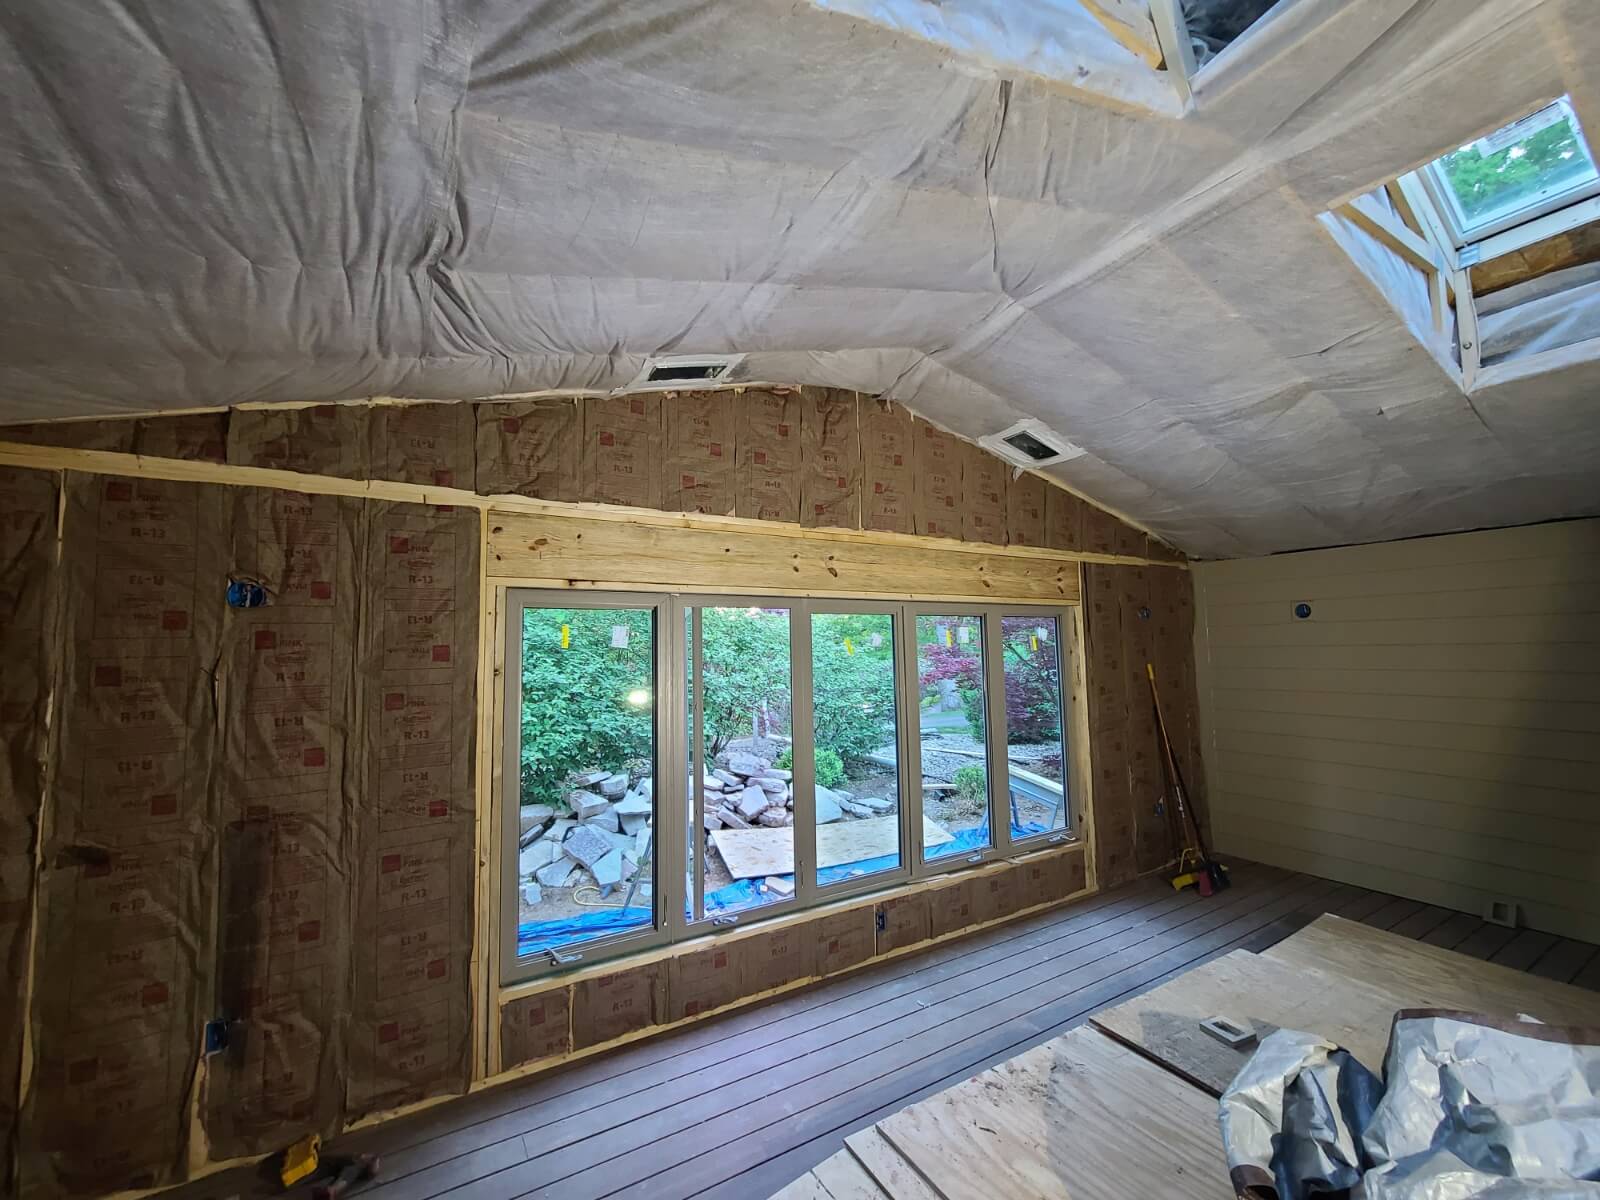 North Charlotte attic insulation company